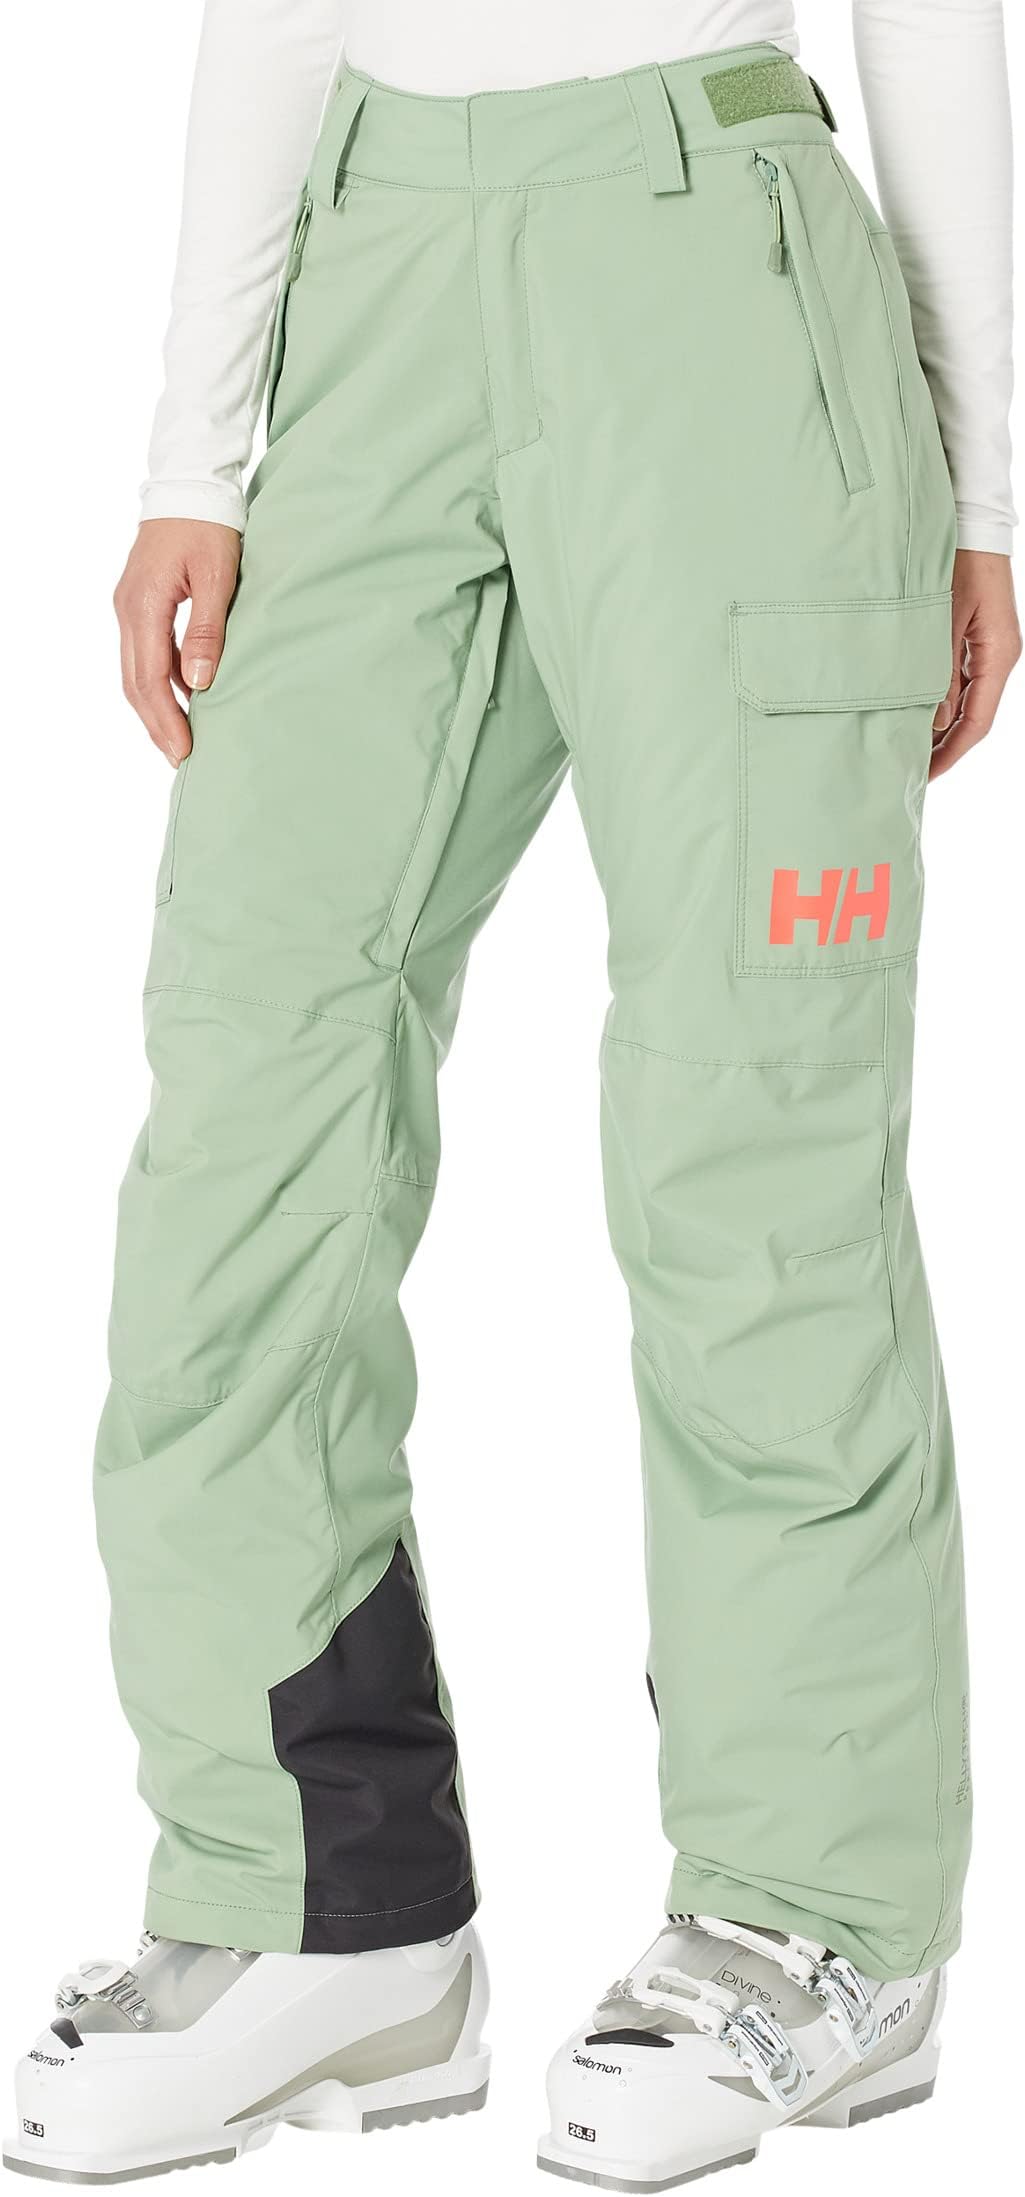 брюки switch cargo insulated pants helly hansen цвет terrazzo Брюки Switch Cargo Insulated Pants Helly Hansen, цвет Jade 2.0